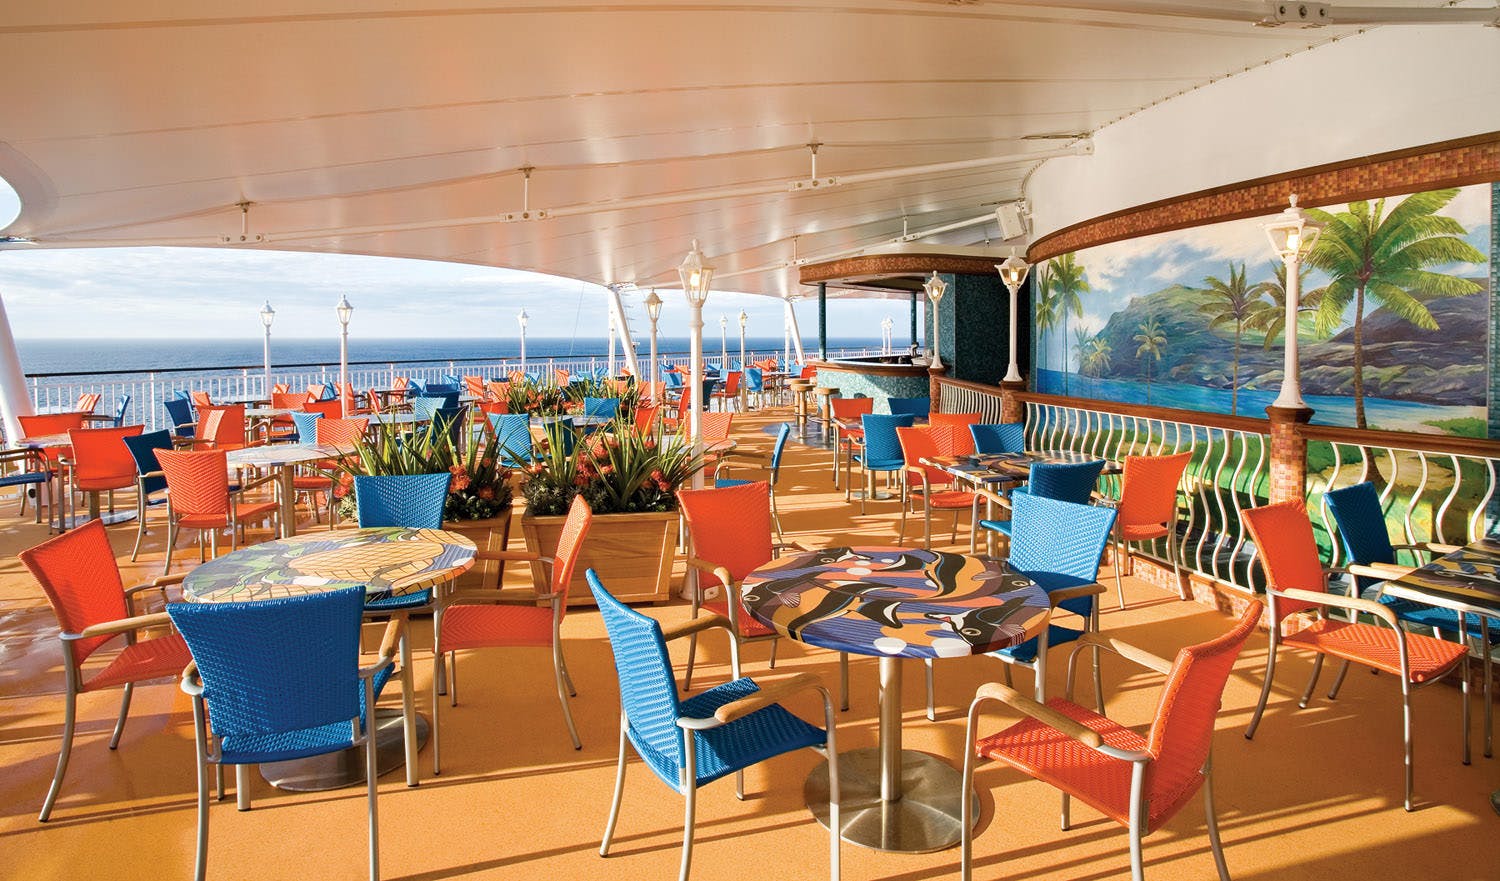 Norwegian Jade - Norwegian Cruise Line - Norwegian Jade